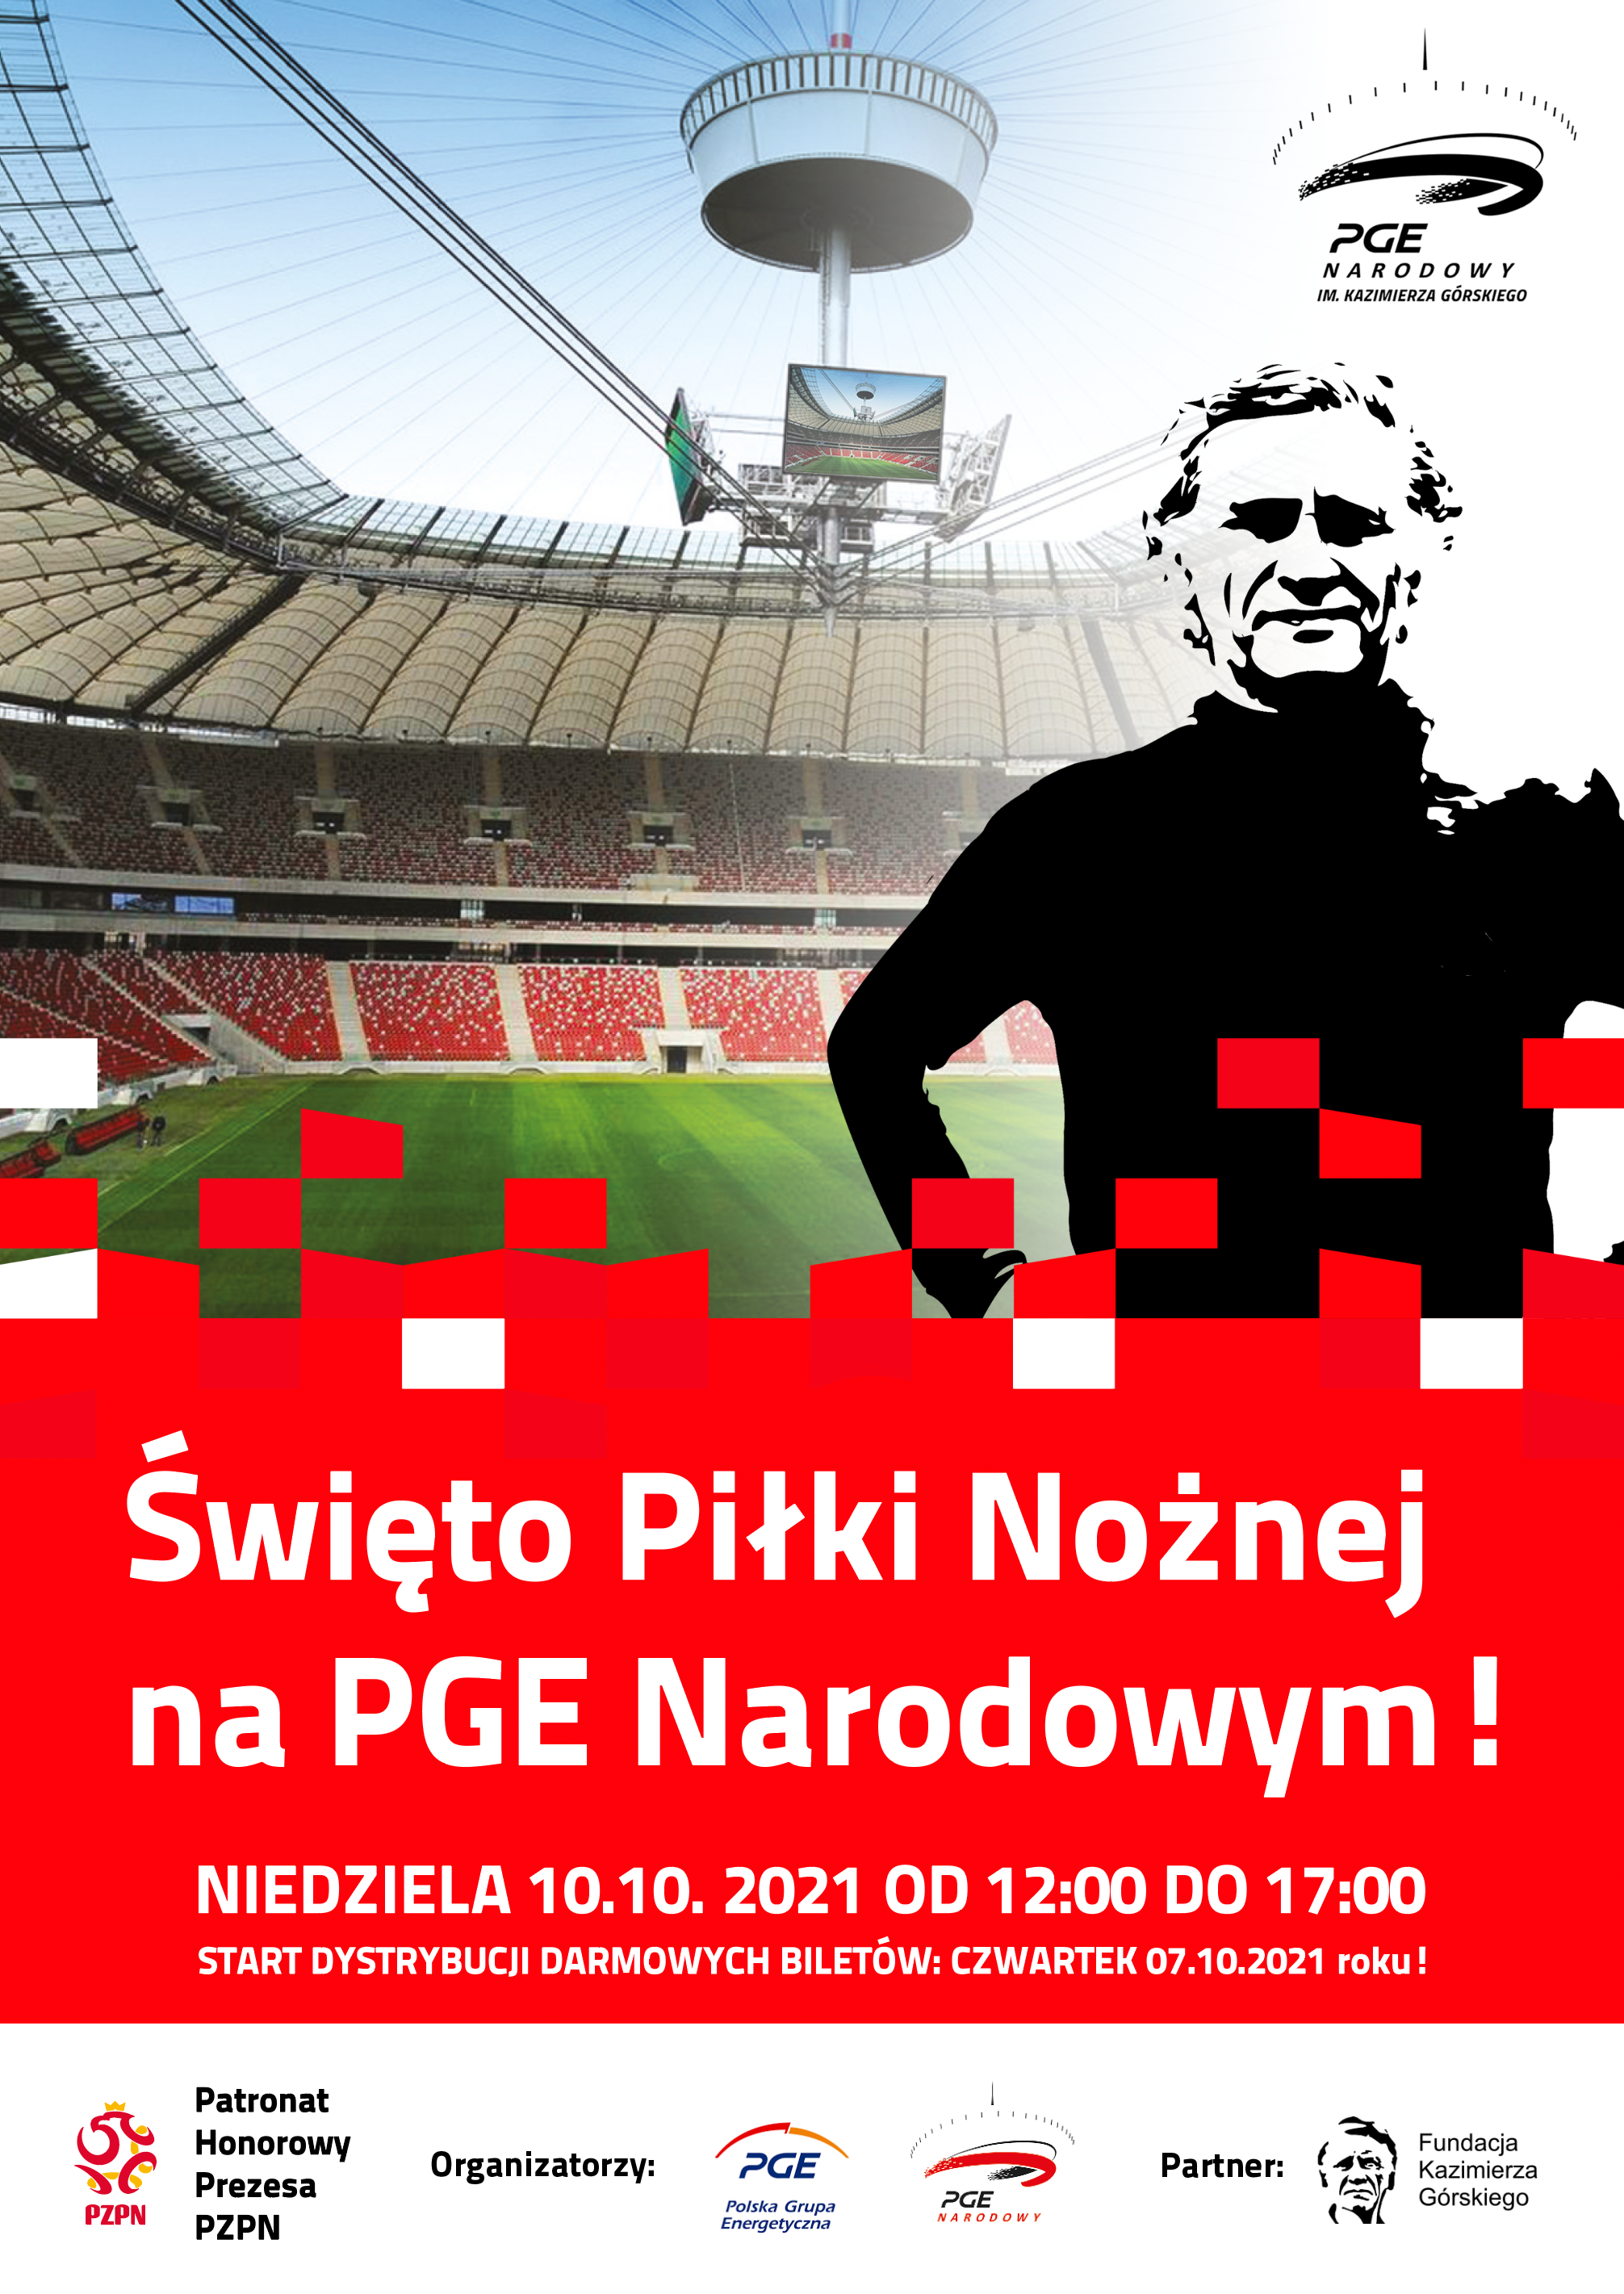 PGE i PGE Narodowy zapraszają na Święto Piłki Nożnej